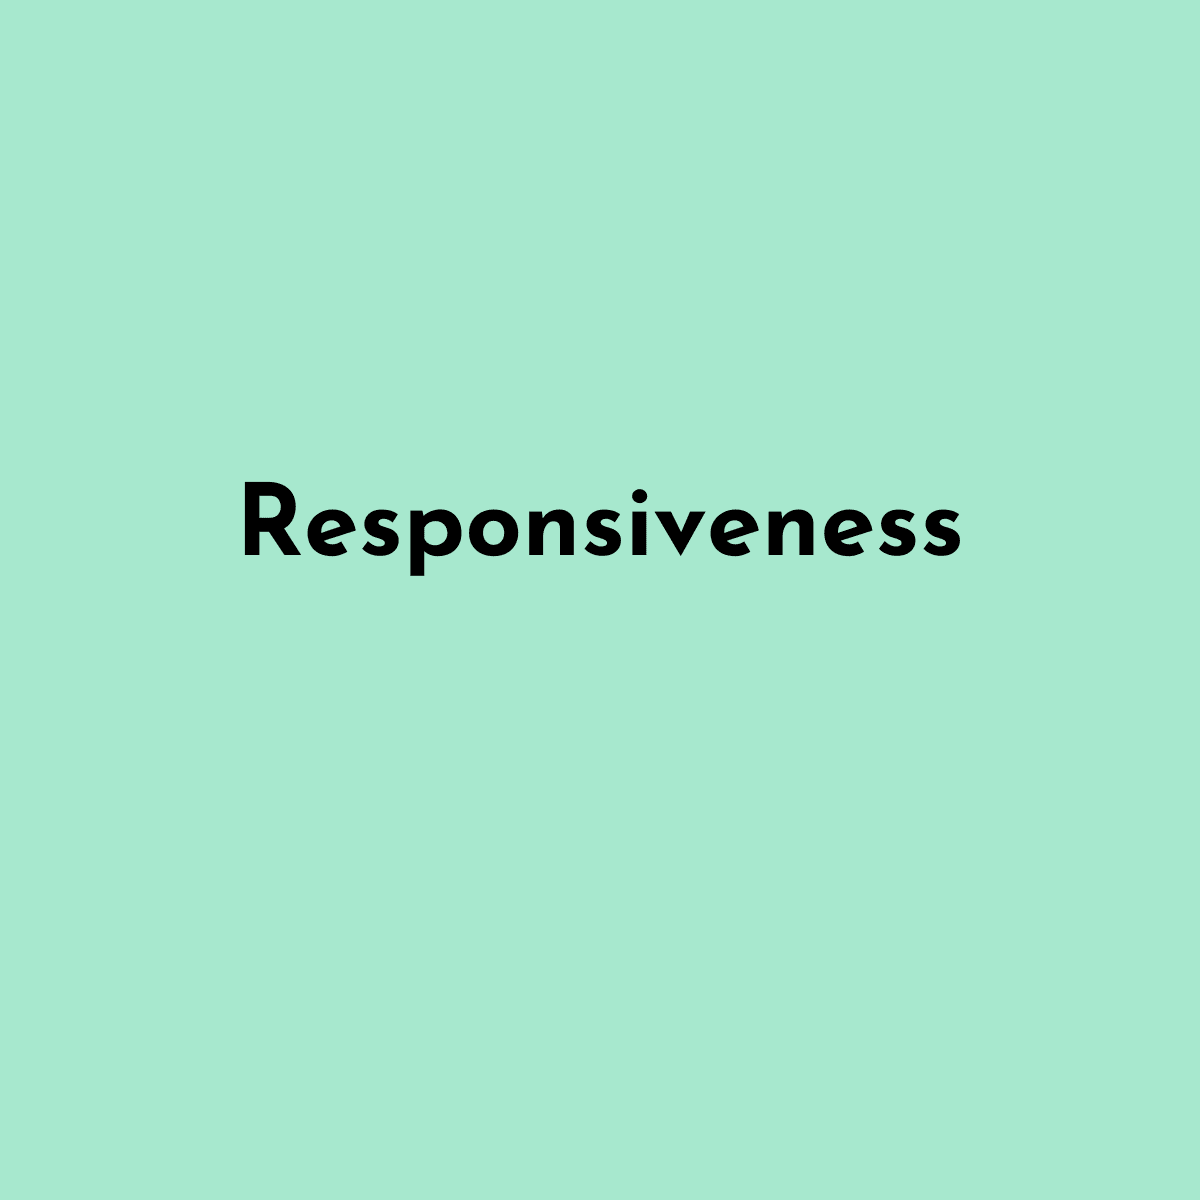 Bild zeigt Text: "Responsiveness"